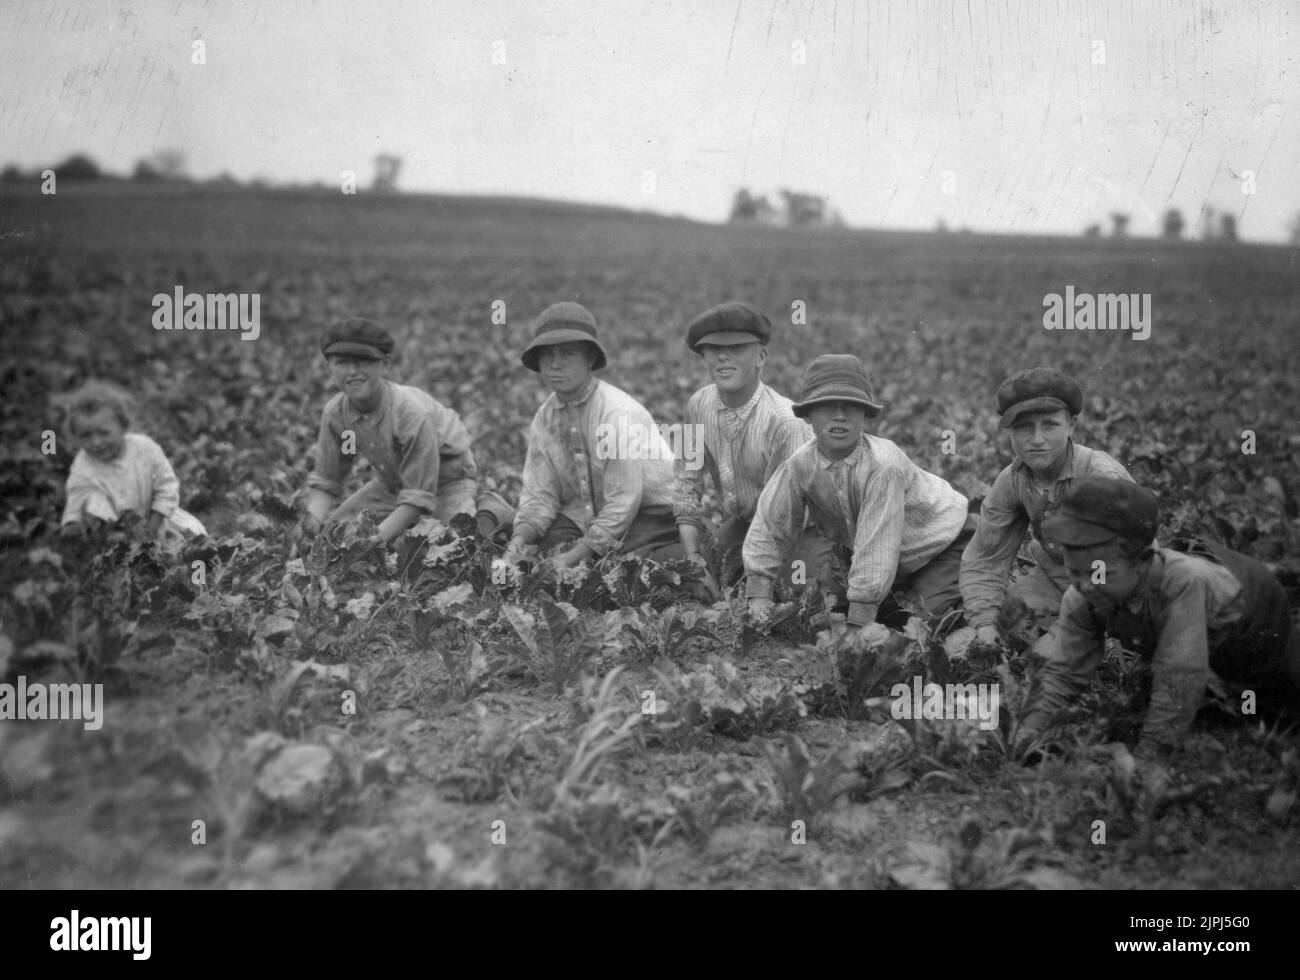 Kinder, die in den Zuckerrüben für Louis Startz arbeiten, einen Landwirt in der Nähe von Fond du Lac, Wisconsin. Die Kinder werden aus der nahe gelegenen Stadt gebracht, um die Rüben zu bearbeiten. Siehe Hine Report, Wisconsin Sugar Beet, Juli 1915. Von Lewis Wickes Hine Stockfoto